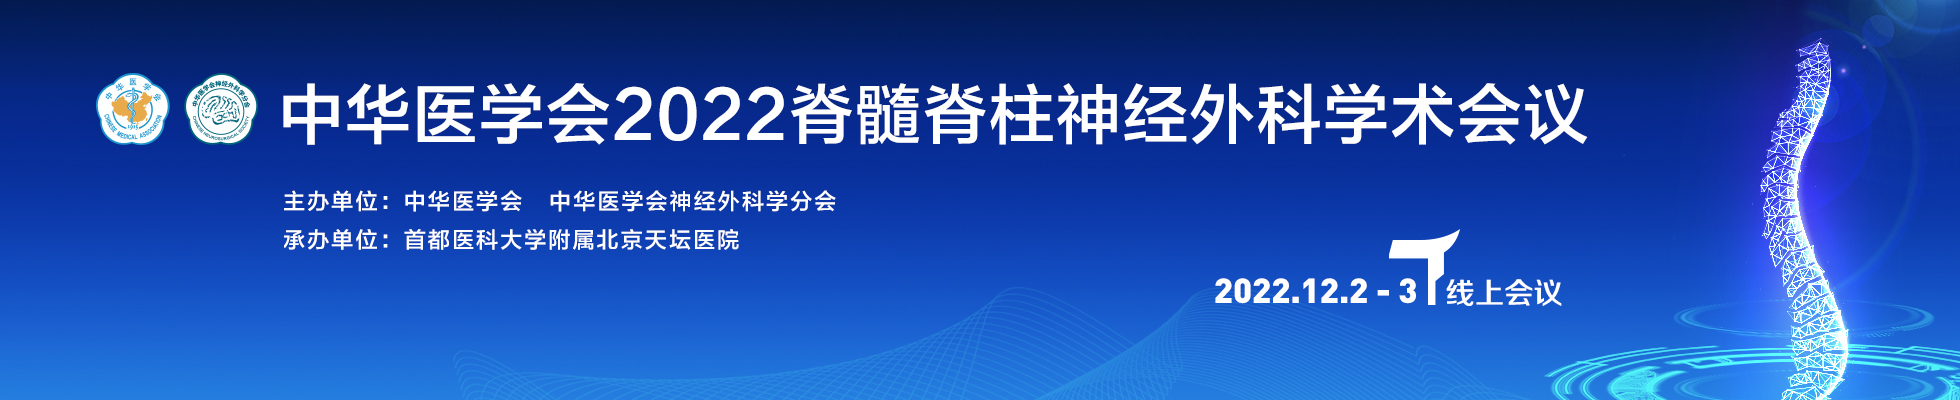 中华医学会2022脊髓脊柱神经外科学术会议